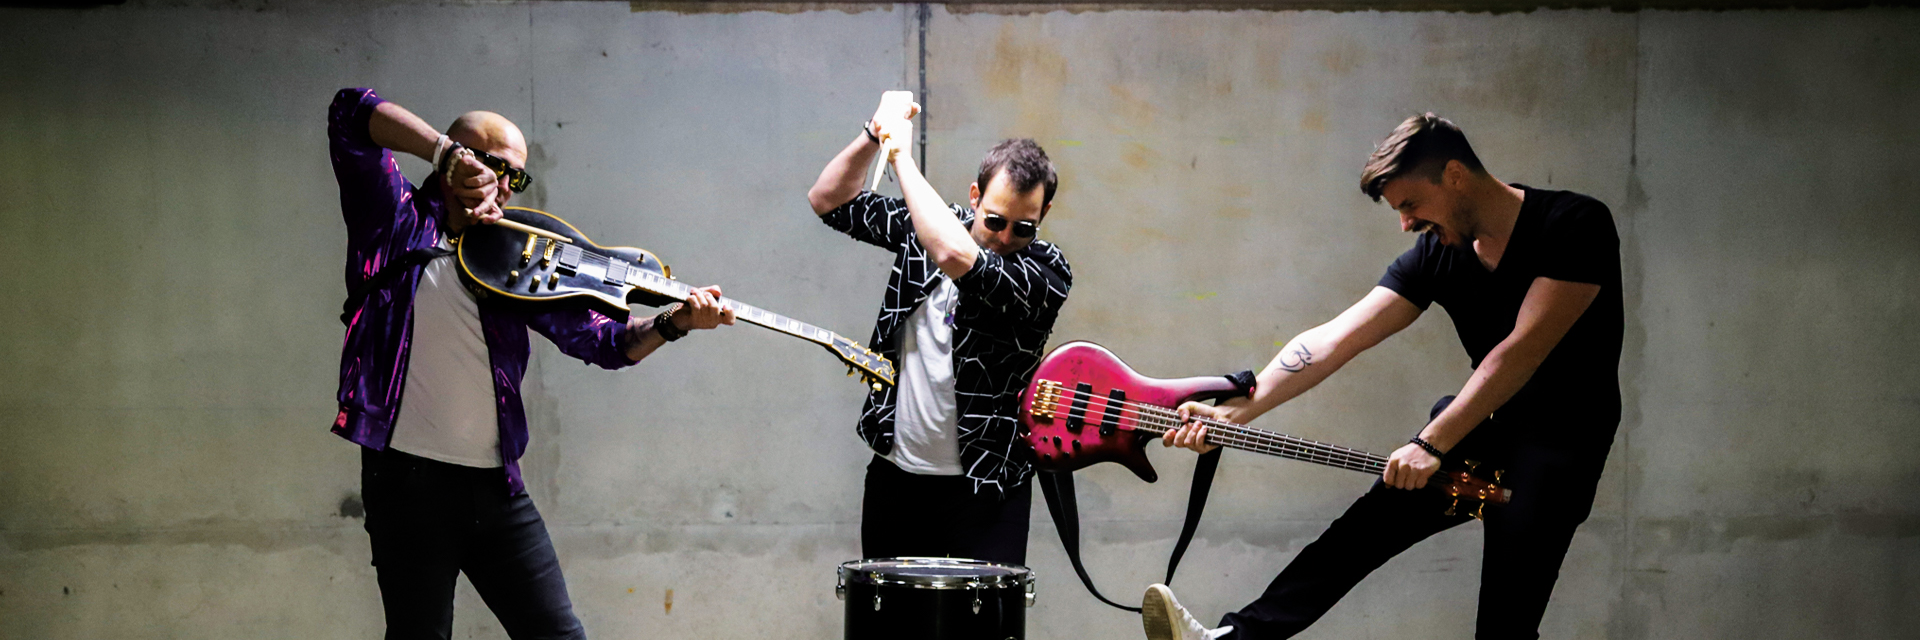 Sea of Minds, groupe de musique Rock en représentation à Loire Atlantique - photo de couverture n° 2